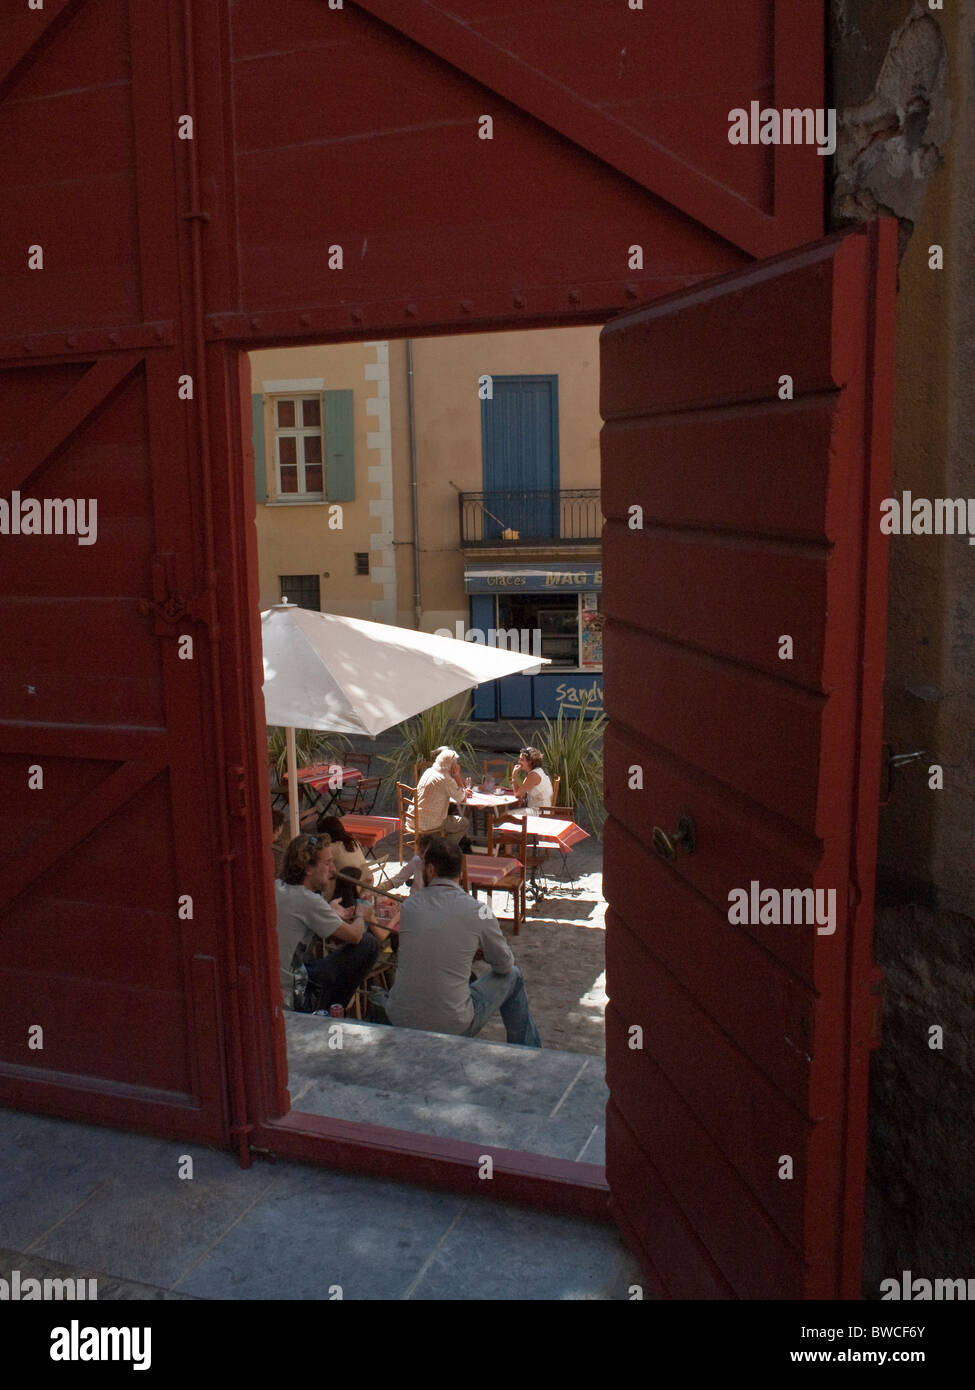 Restaurant le midi dans les vieux quartiers de Perpignan lors de la Visa pour l'image du photojournalisme Banque D'Images